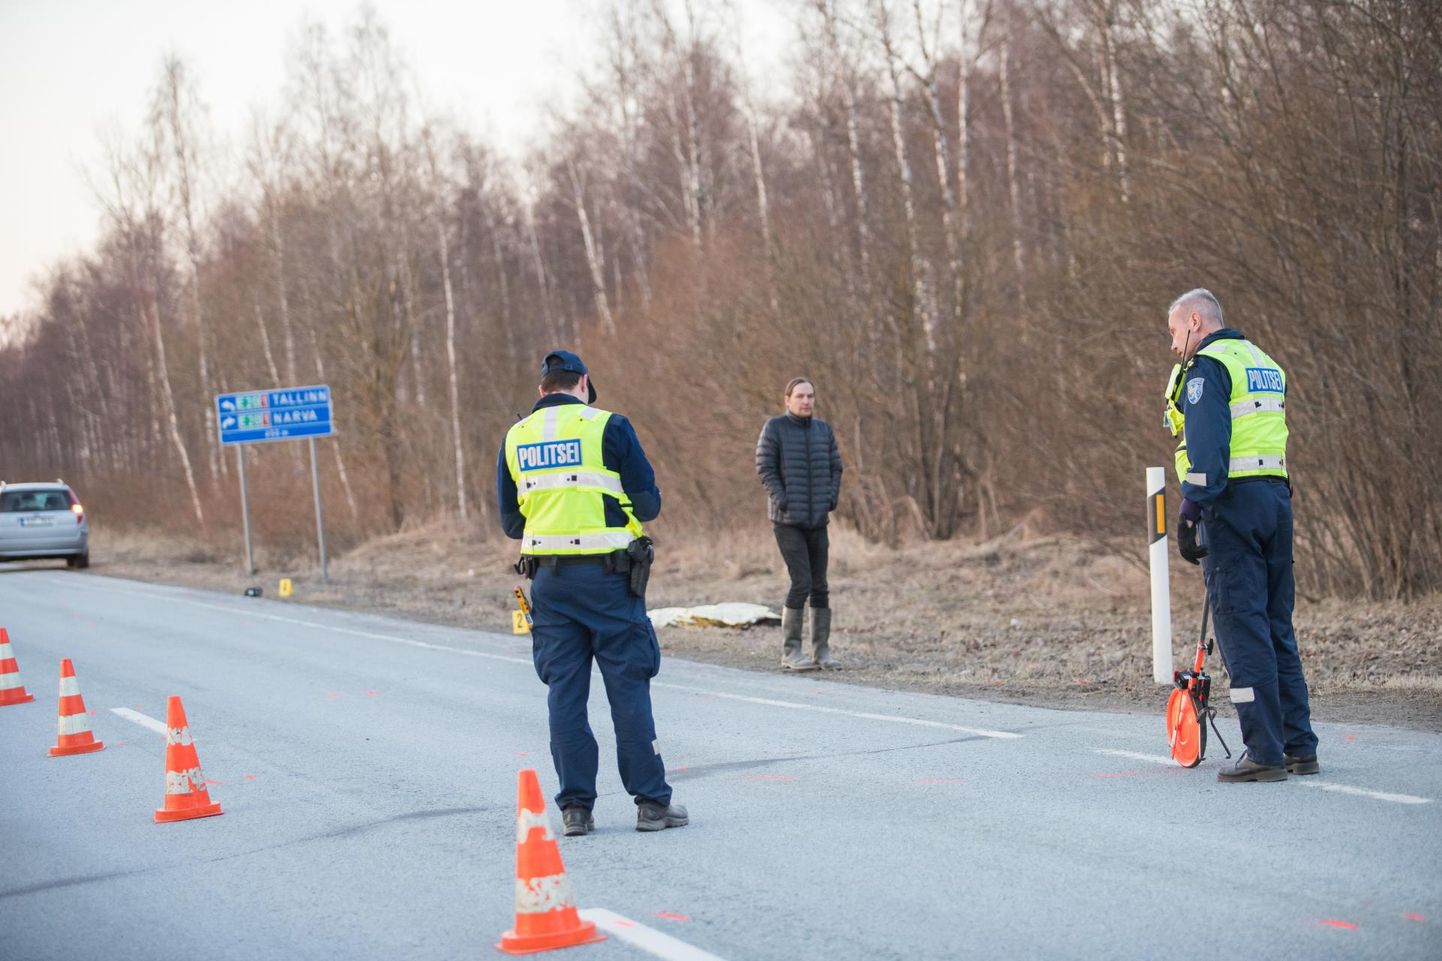 Üks traagilisemaid liiklusõnnetusi juhtus mullu 13. aprillil, mil Arkna risti lähedal sai traktori eest sõiduteele jooksnud 33-aastane naine autolt löögi ja suri.